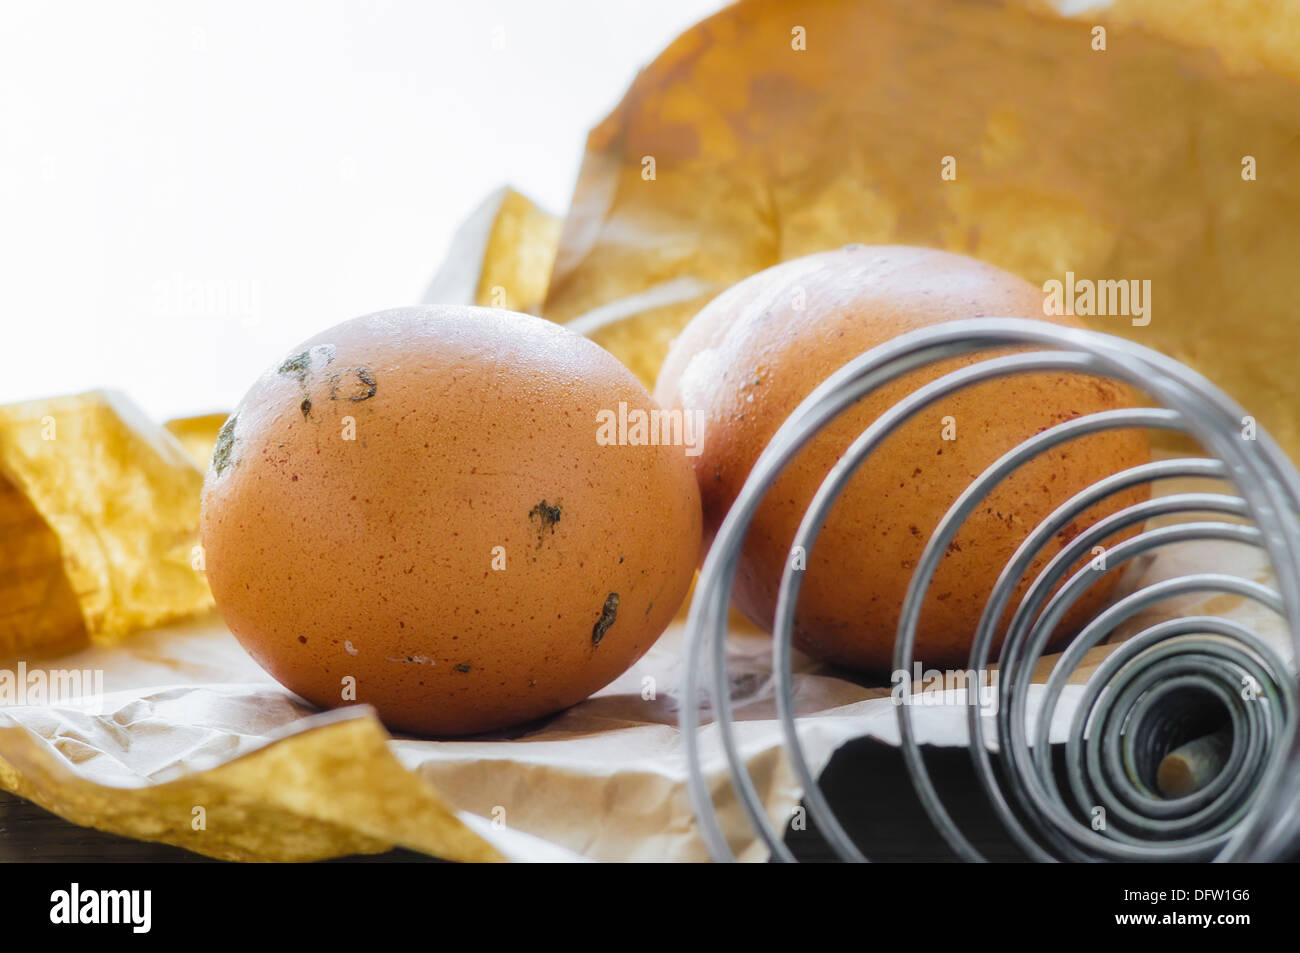 Deux œufs frais juste posées, sur un sac en papier brun avec un fouet spirale Banque D'Images